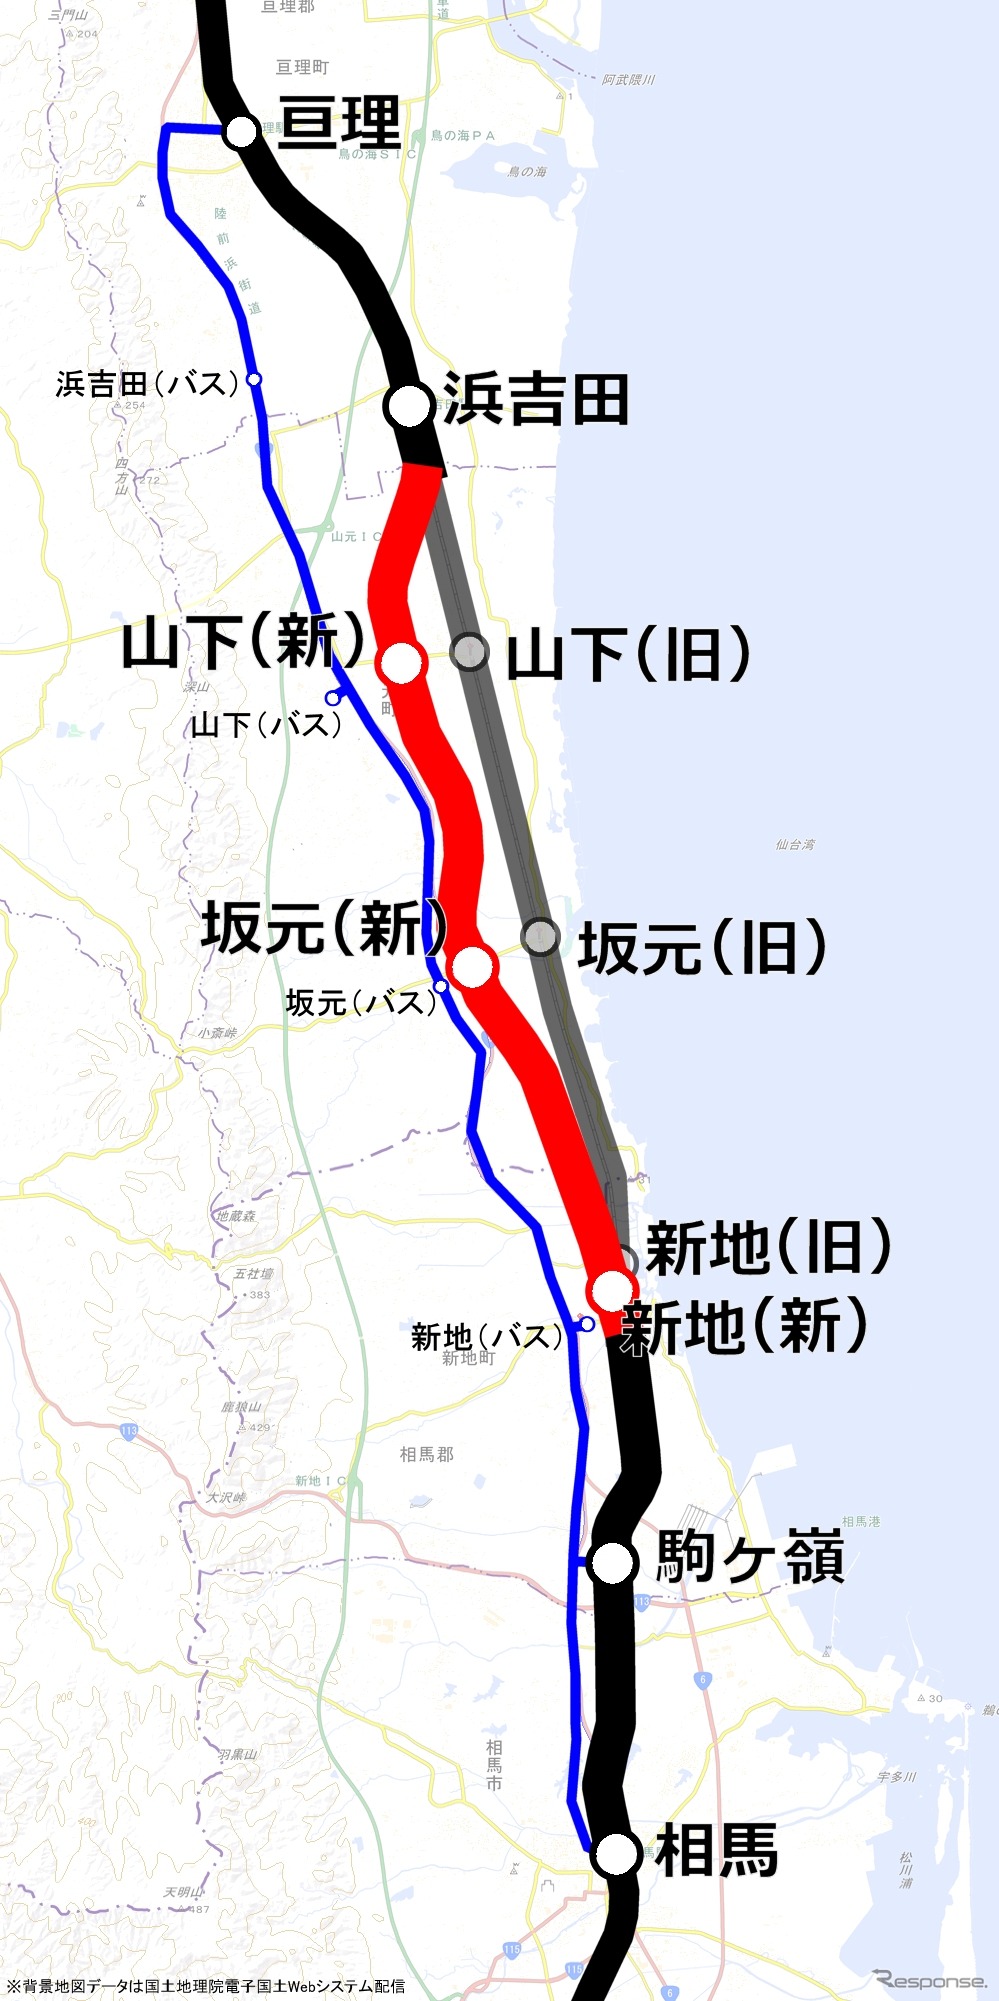 相馬～浜吉田間の路線図。新地駅付近から浜吉田付近まで内陸寄りにルートを変更した。